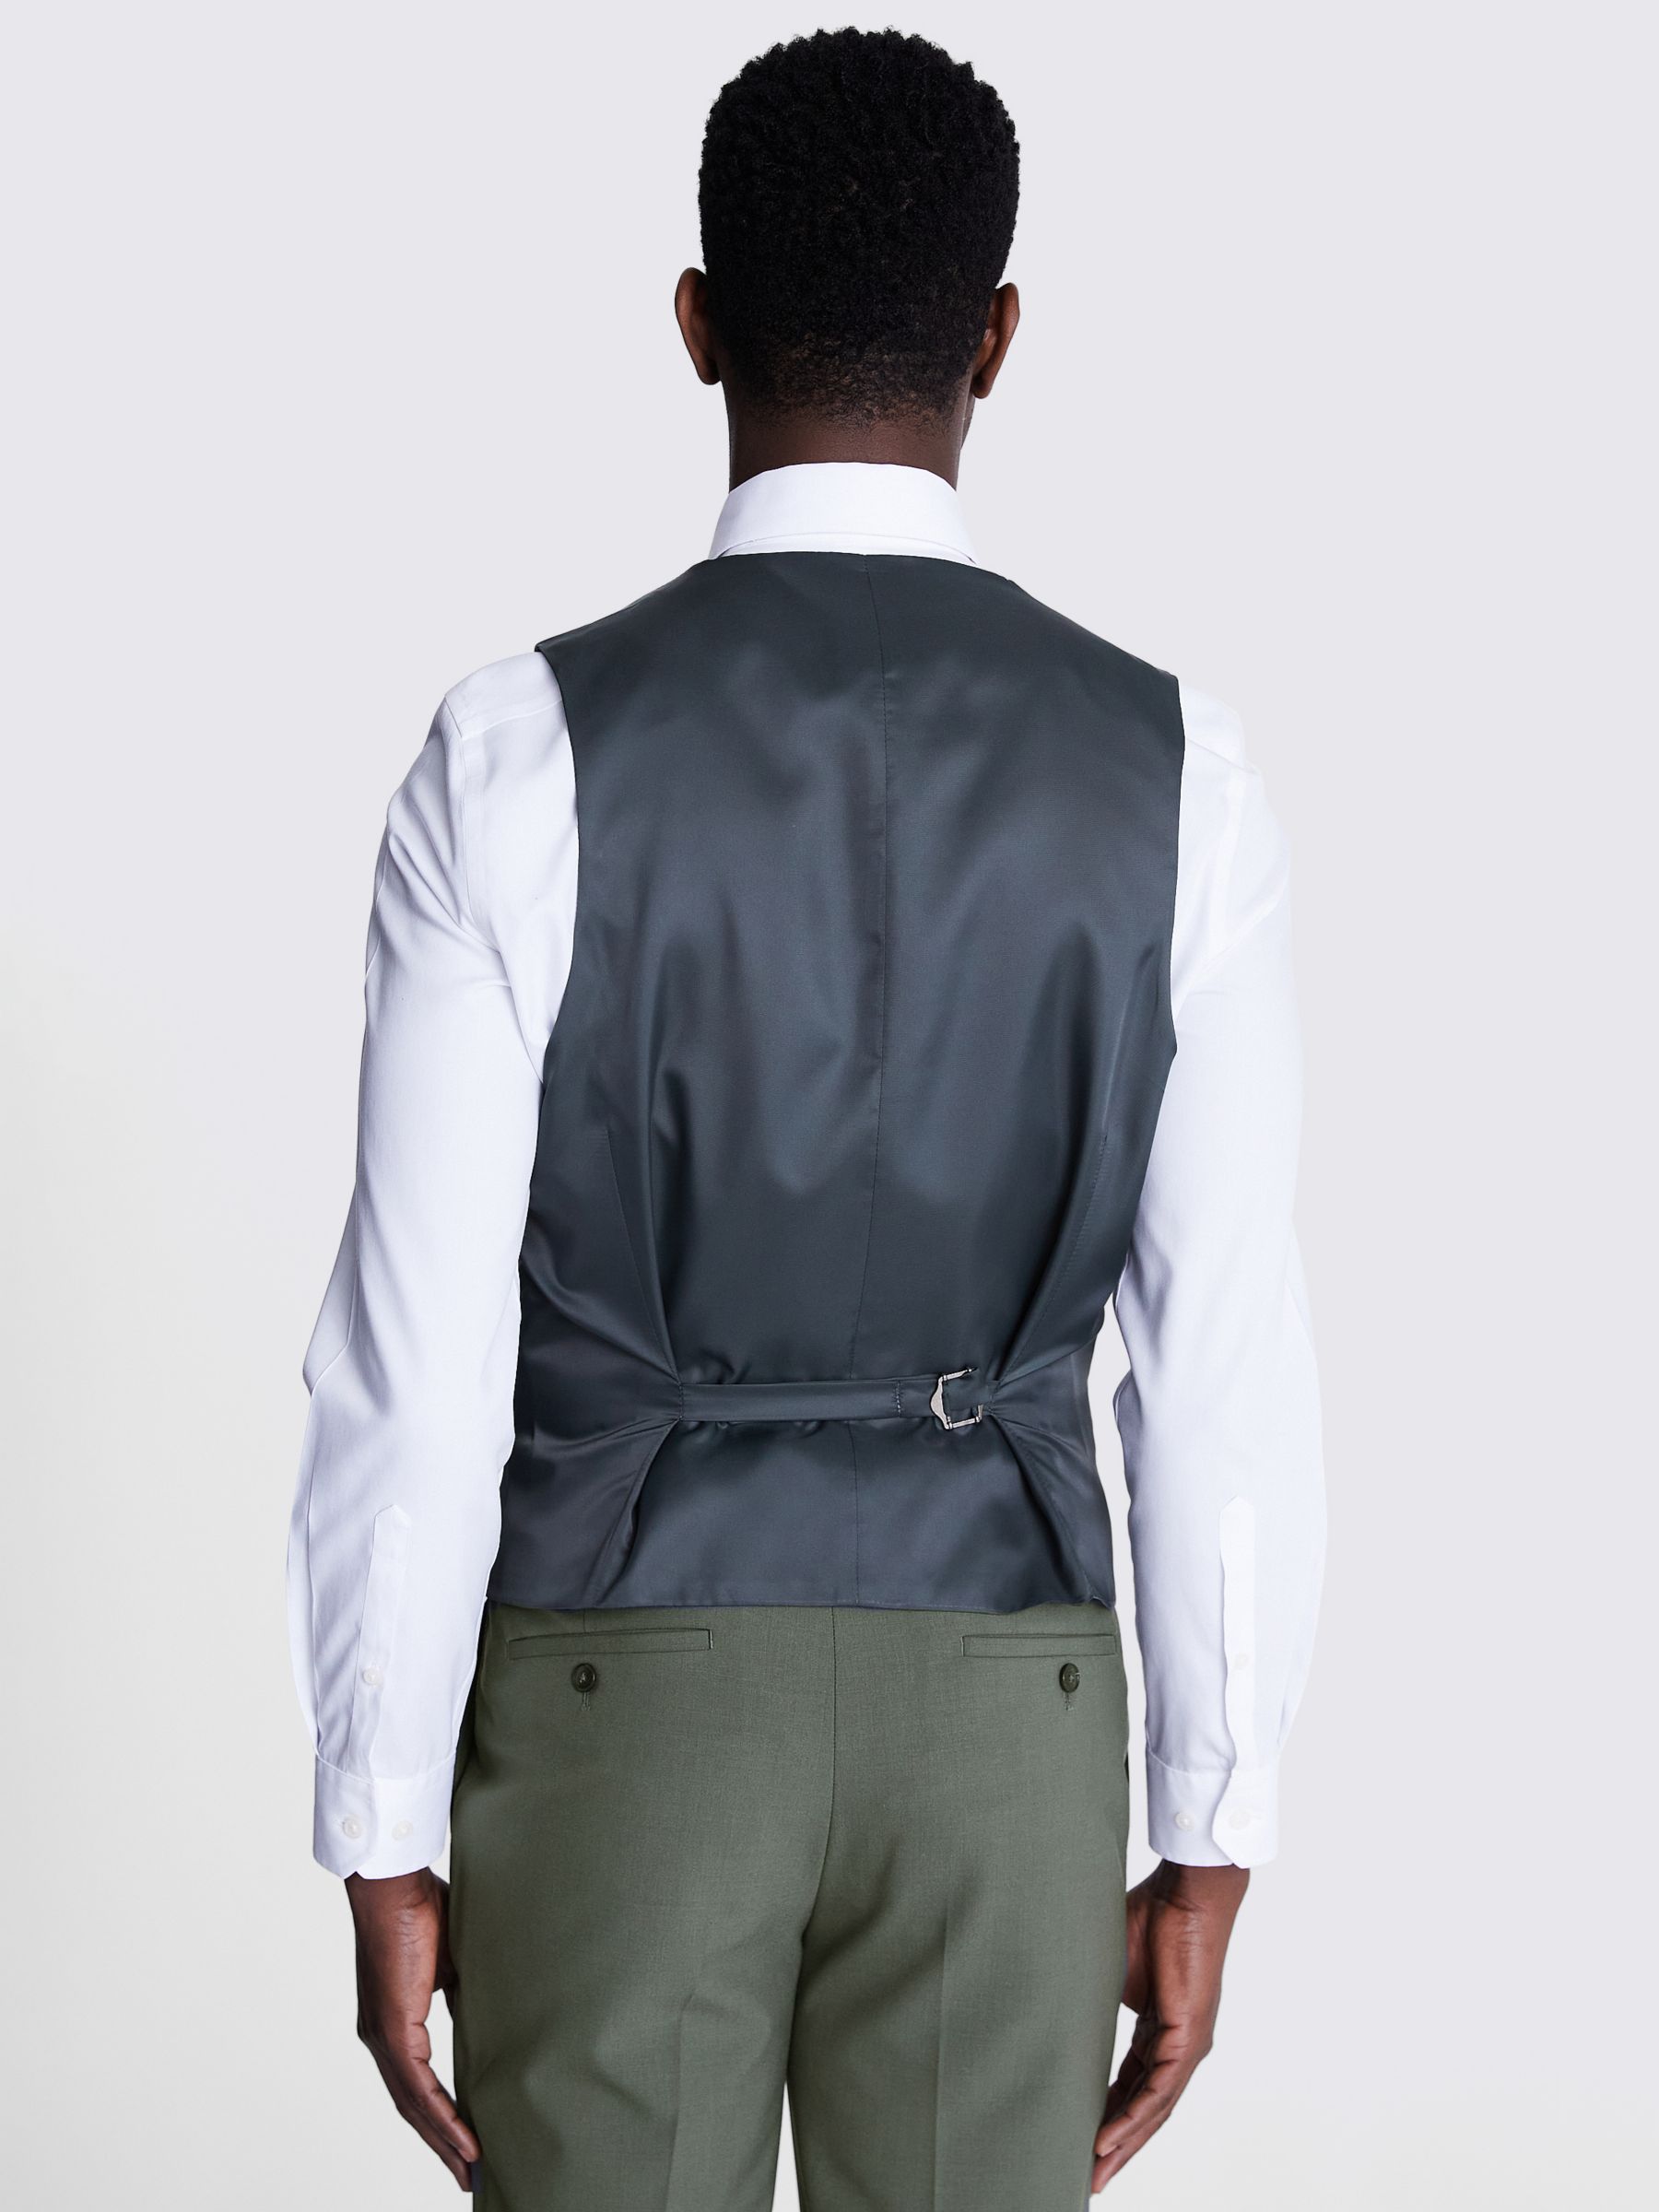 Moss x DKNY Slim Fit Wool Blend Waistcoat, Sage Green, 46R